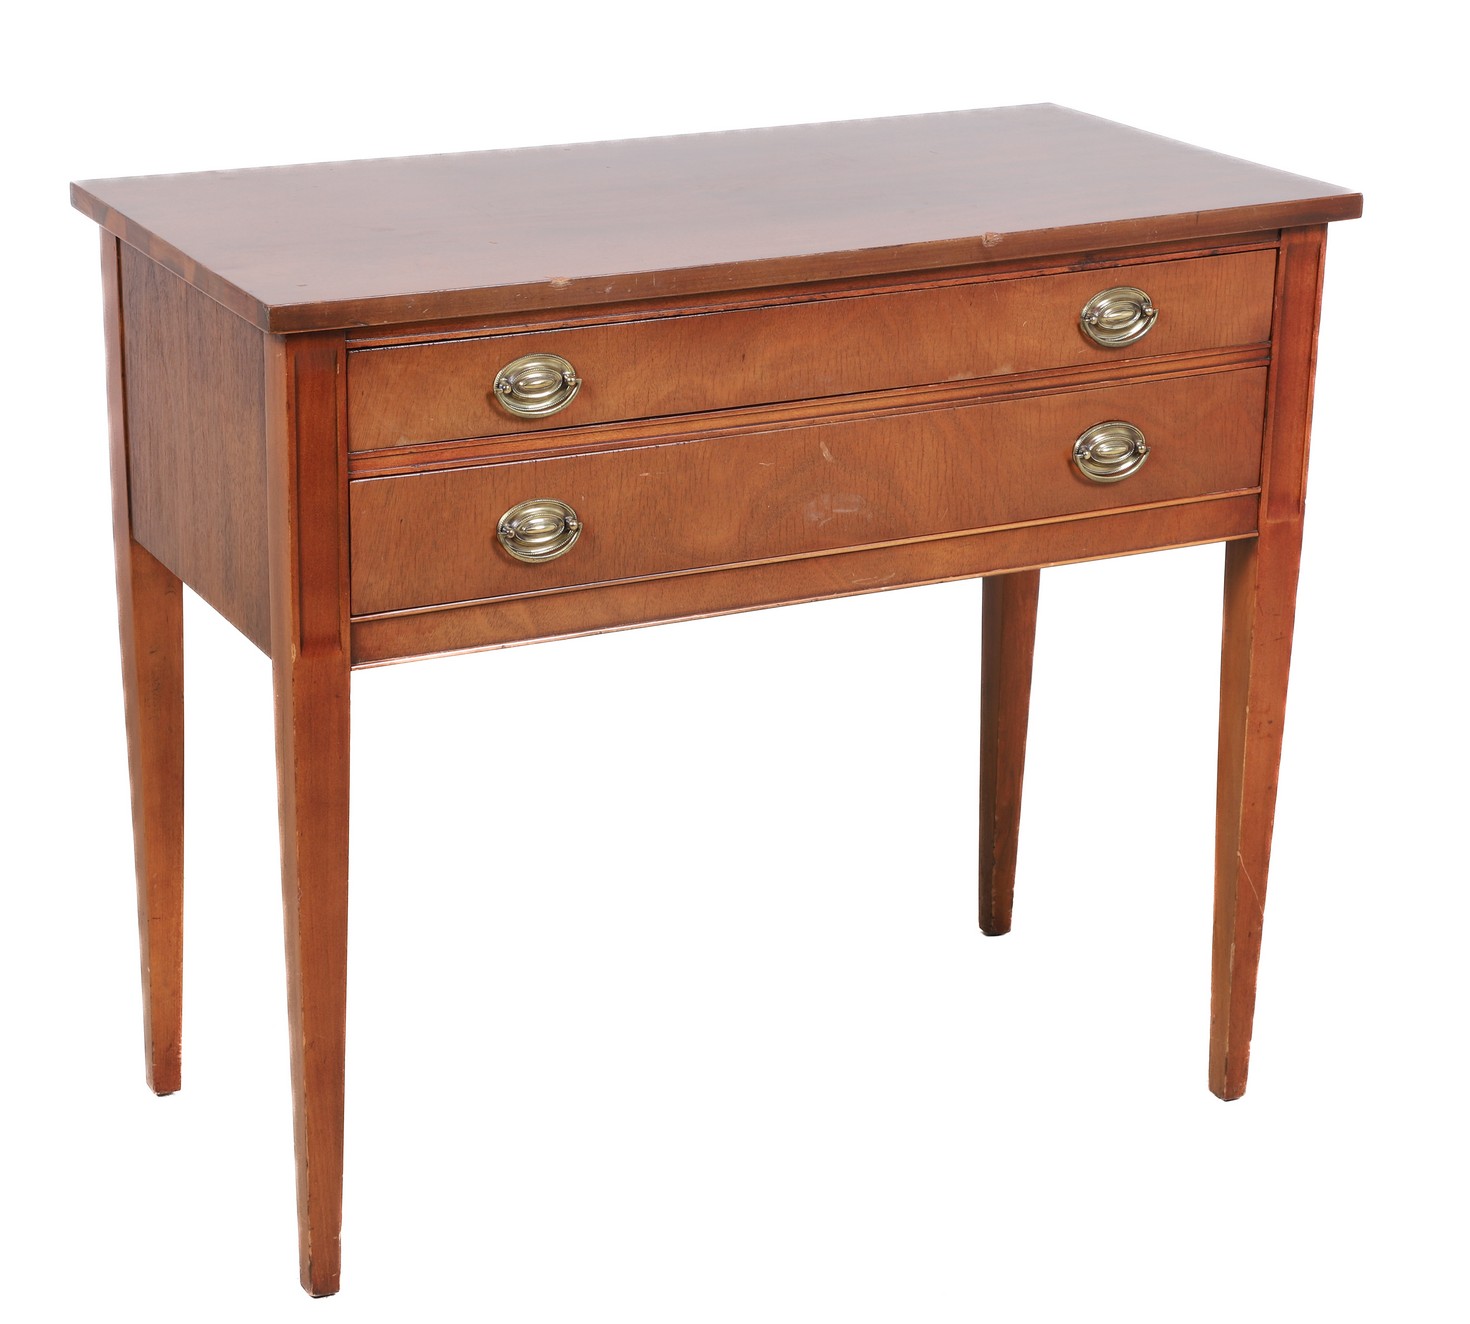 Hepplewhite style mahogany 2-drawer